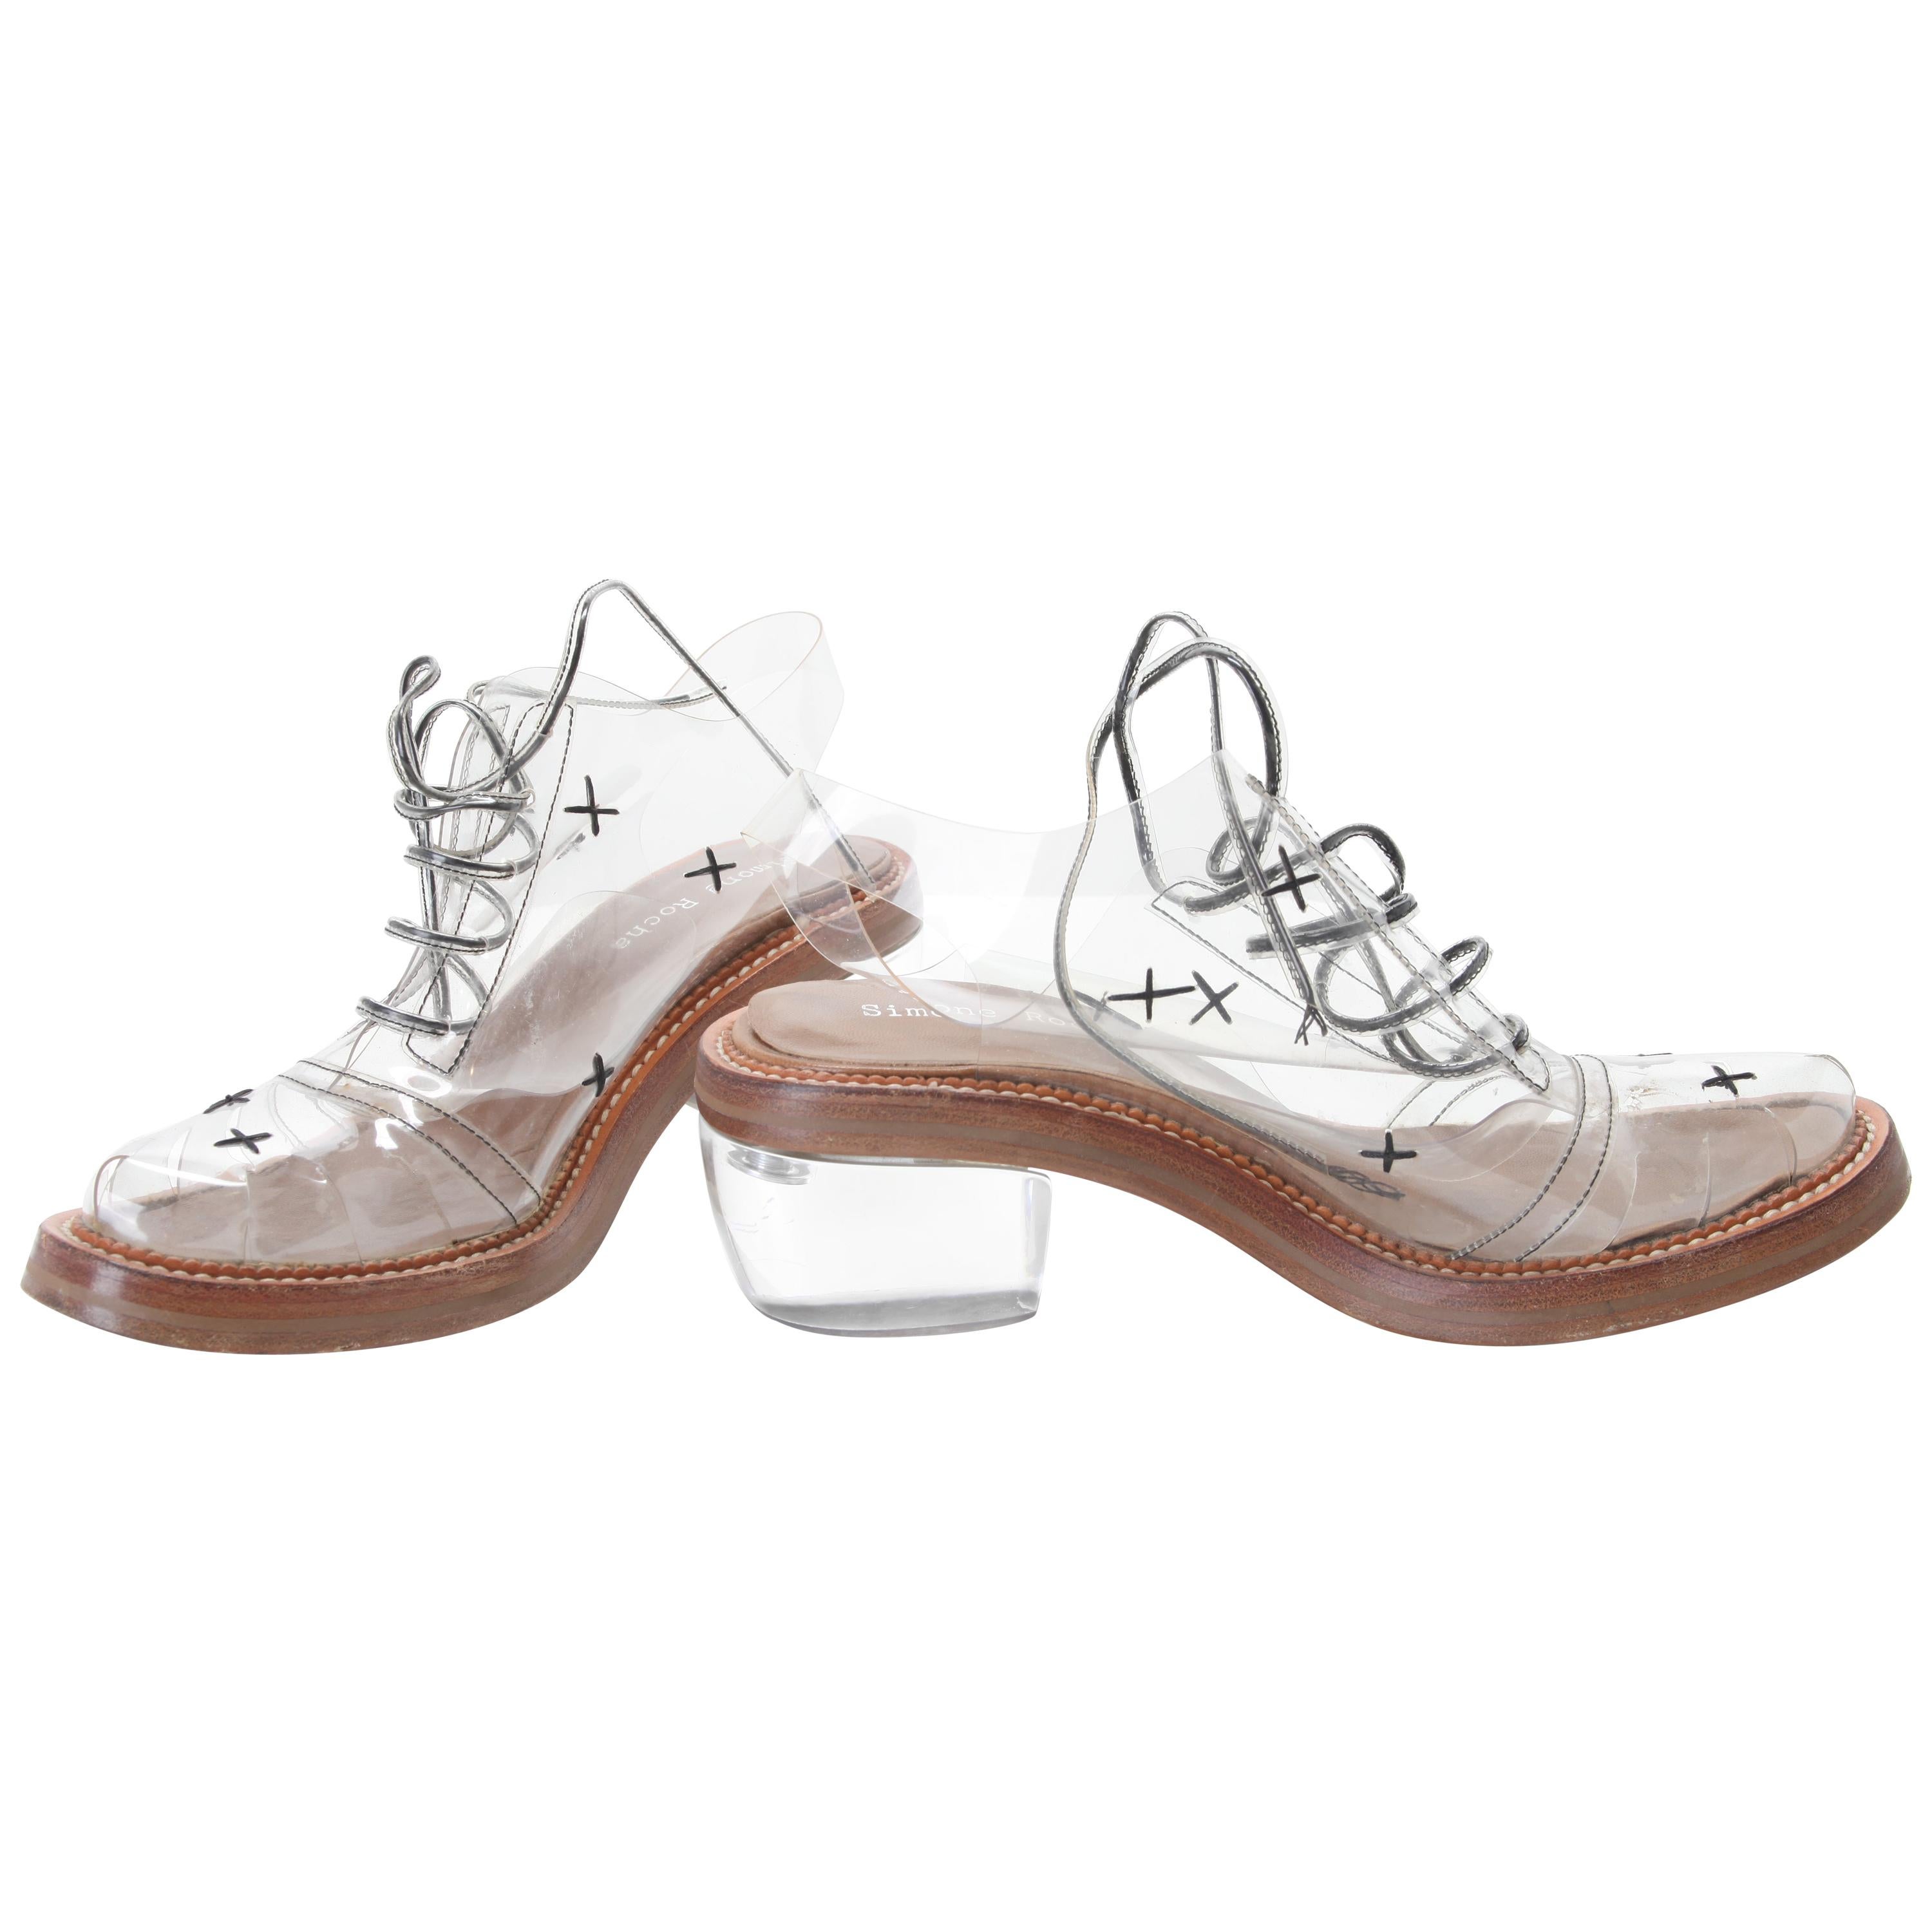 Simone Rocha "Cindy Rella" Transparent Oxfords Shoes EU 39